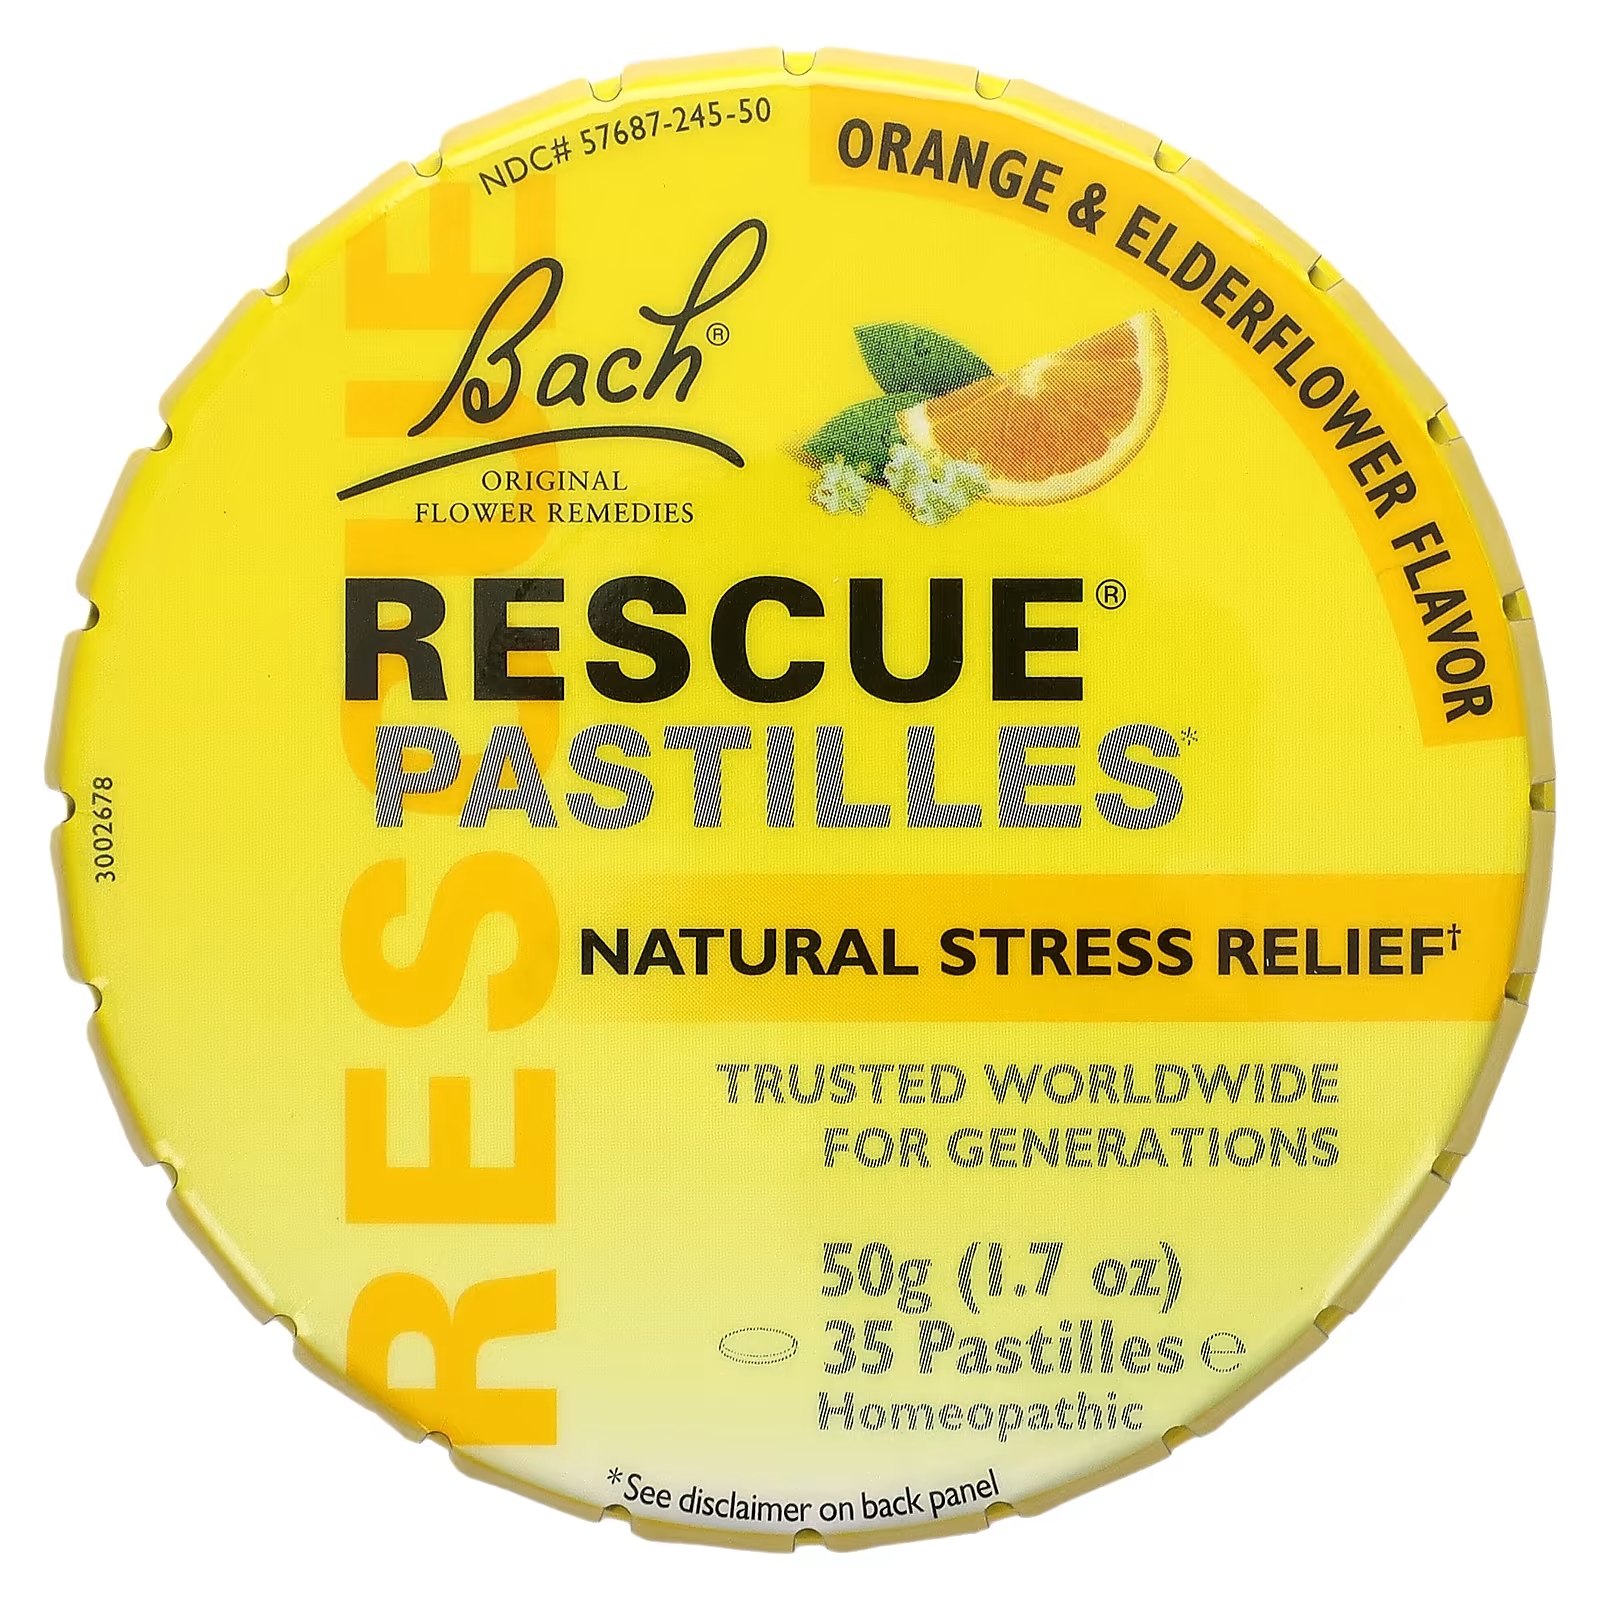 Bach Original Flower Remedies Rescue Pastilles натуральное средство от стресса апельсин и бузина, 35 пастилок bach rescue plus поддержка настроения и стресса апельсин 60 веганских жевательных таблеток